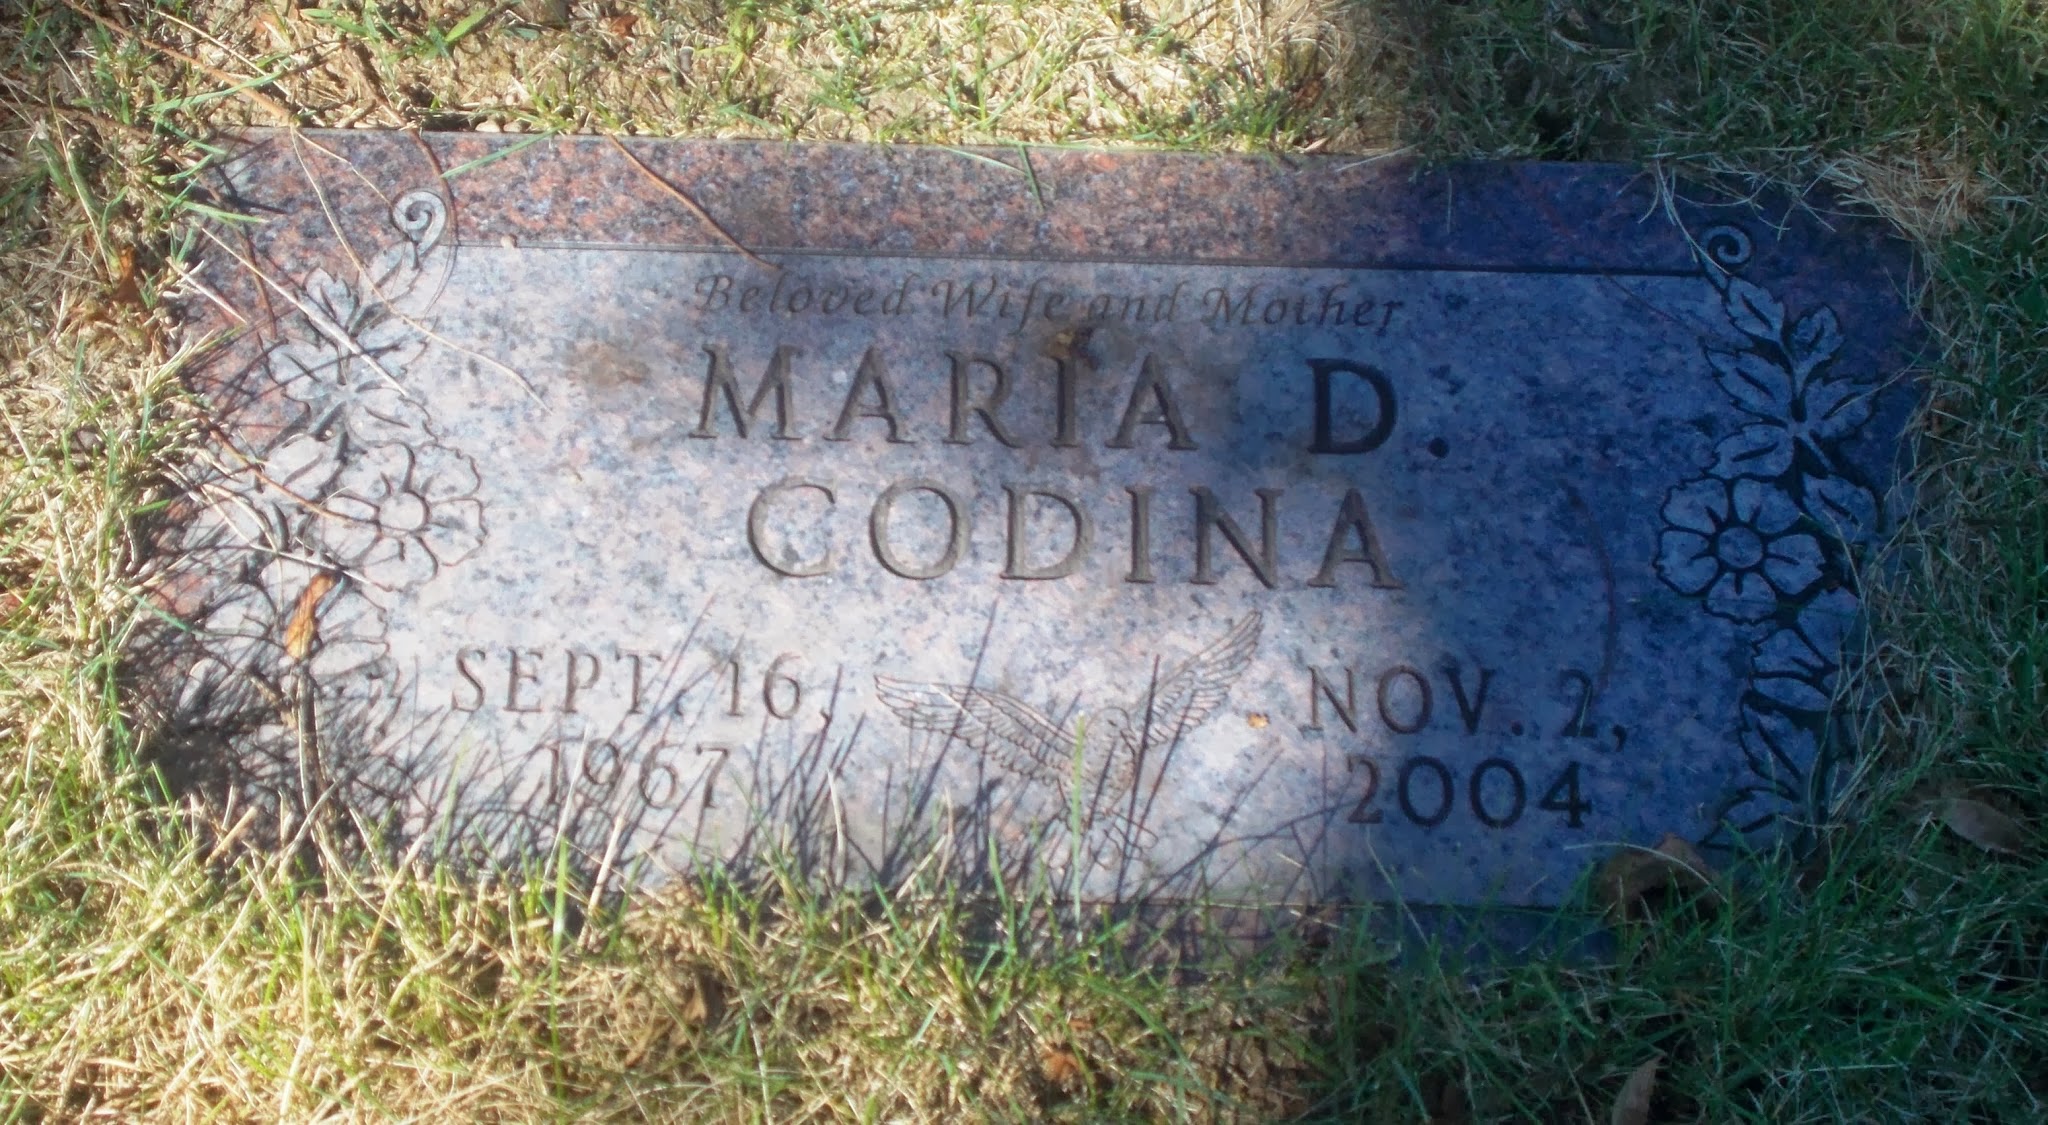 Maria D Godina